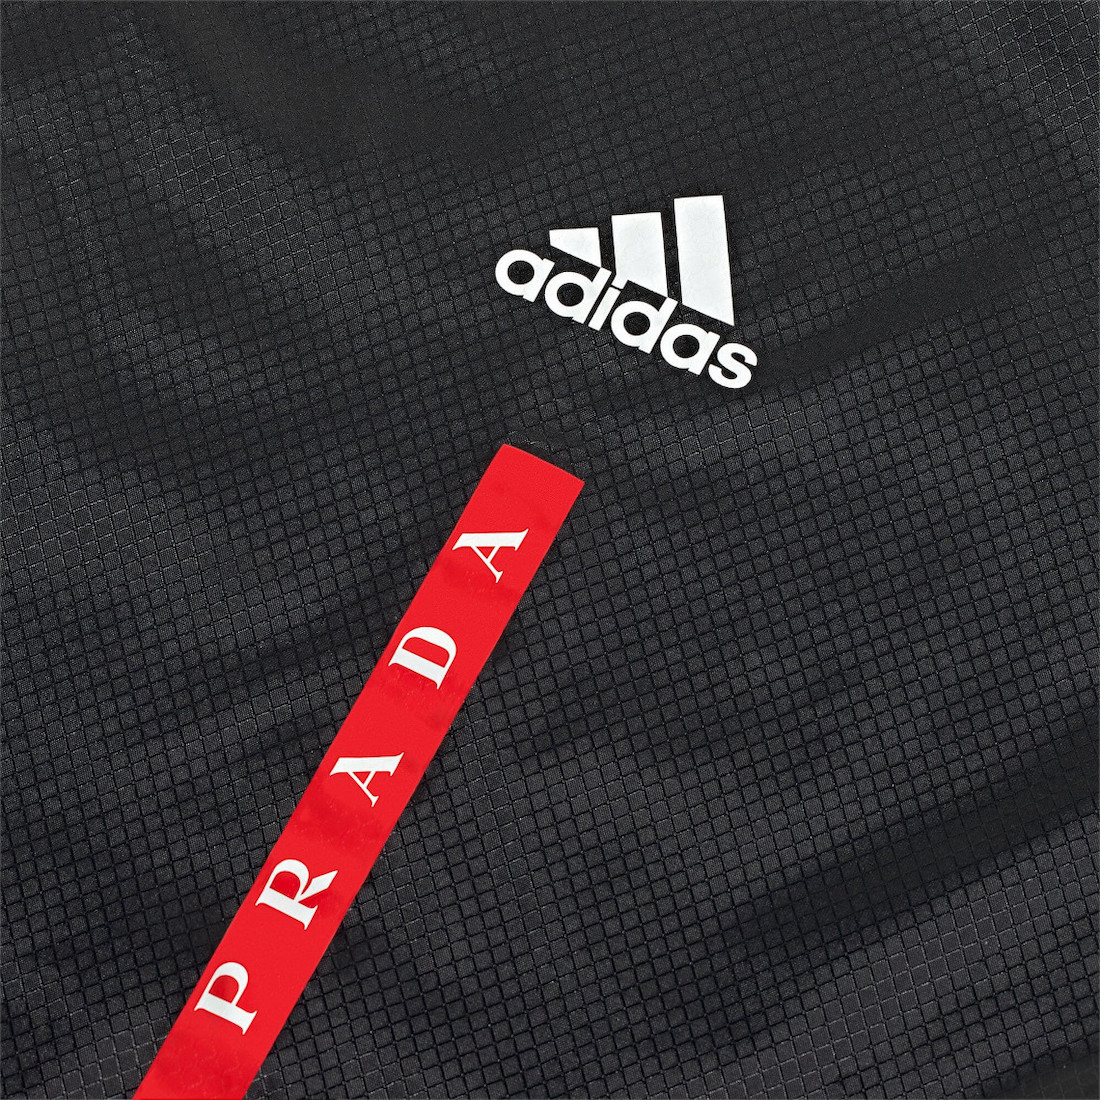 Prada Sneaker match Yeezy Palm logo tee Silver FW1079 Release Date